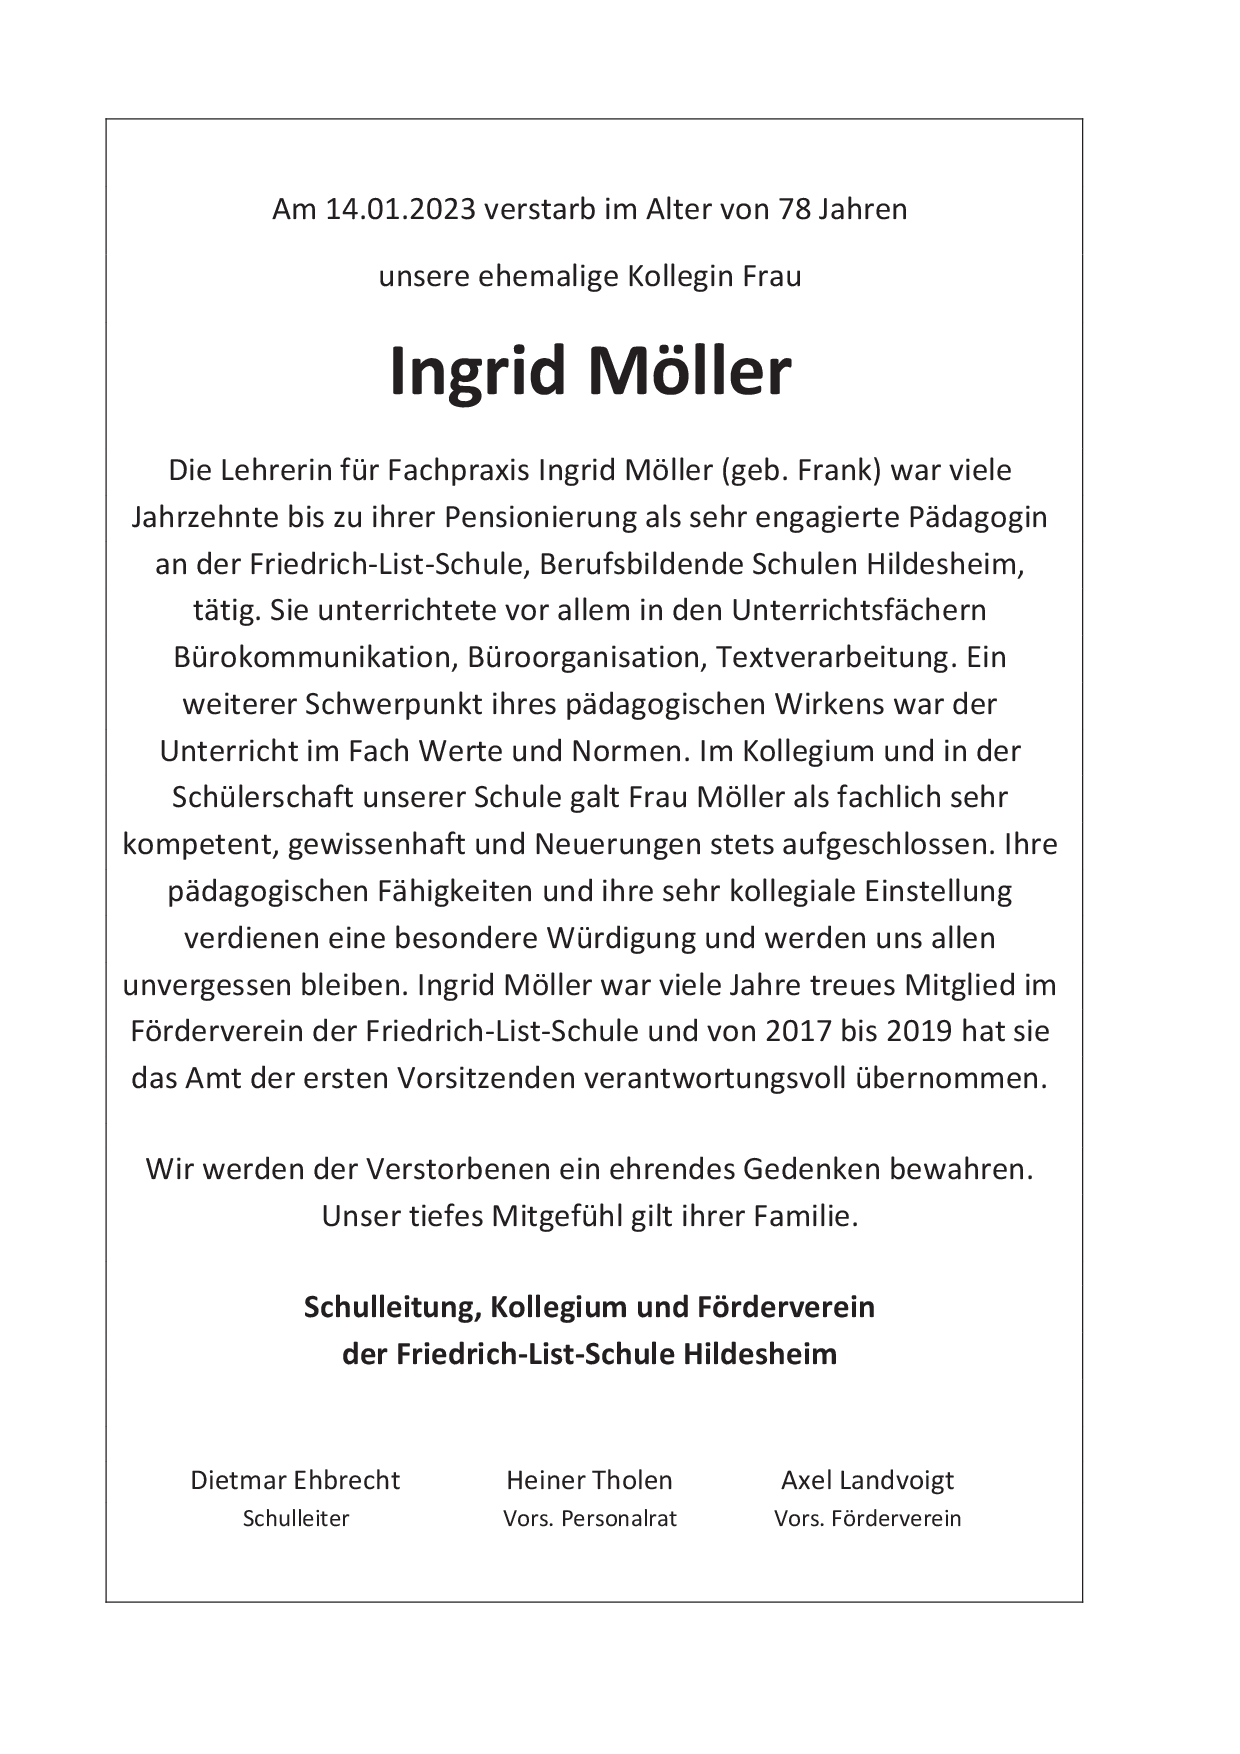 Traueranzeige Ingrid Möller 2023 02 01